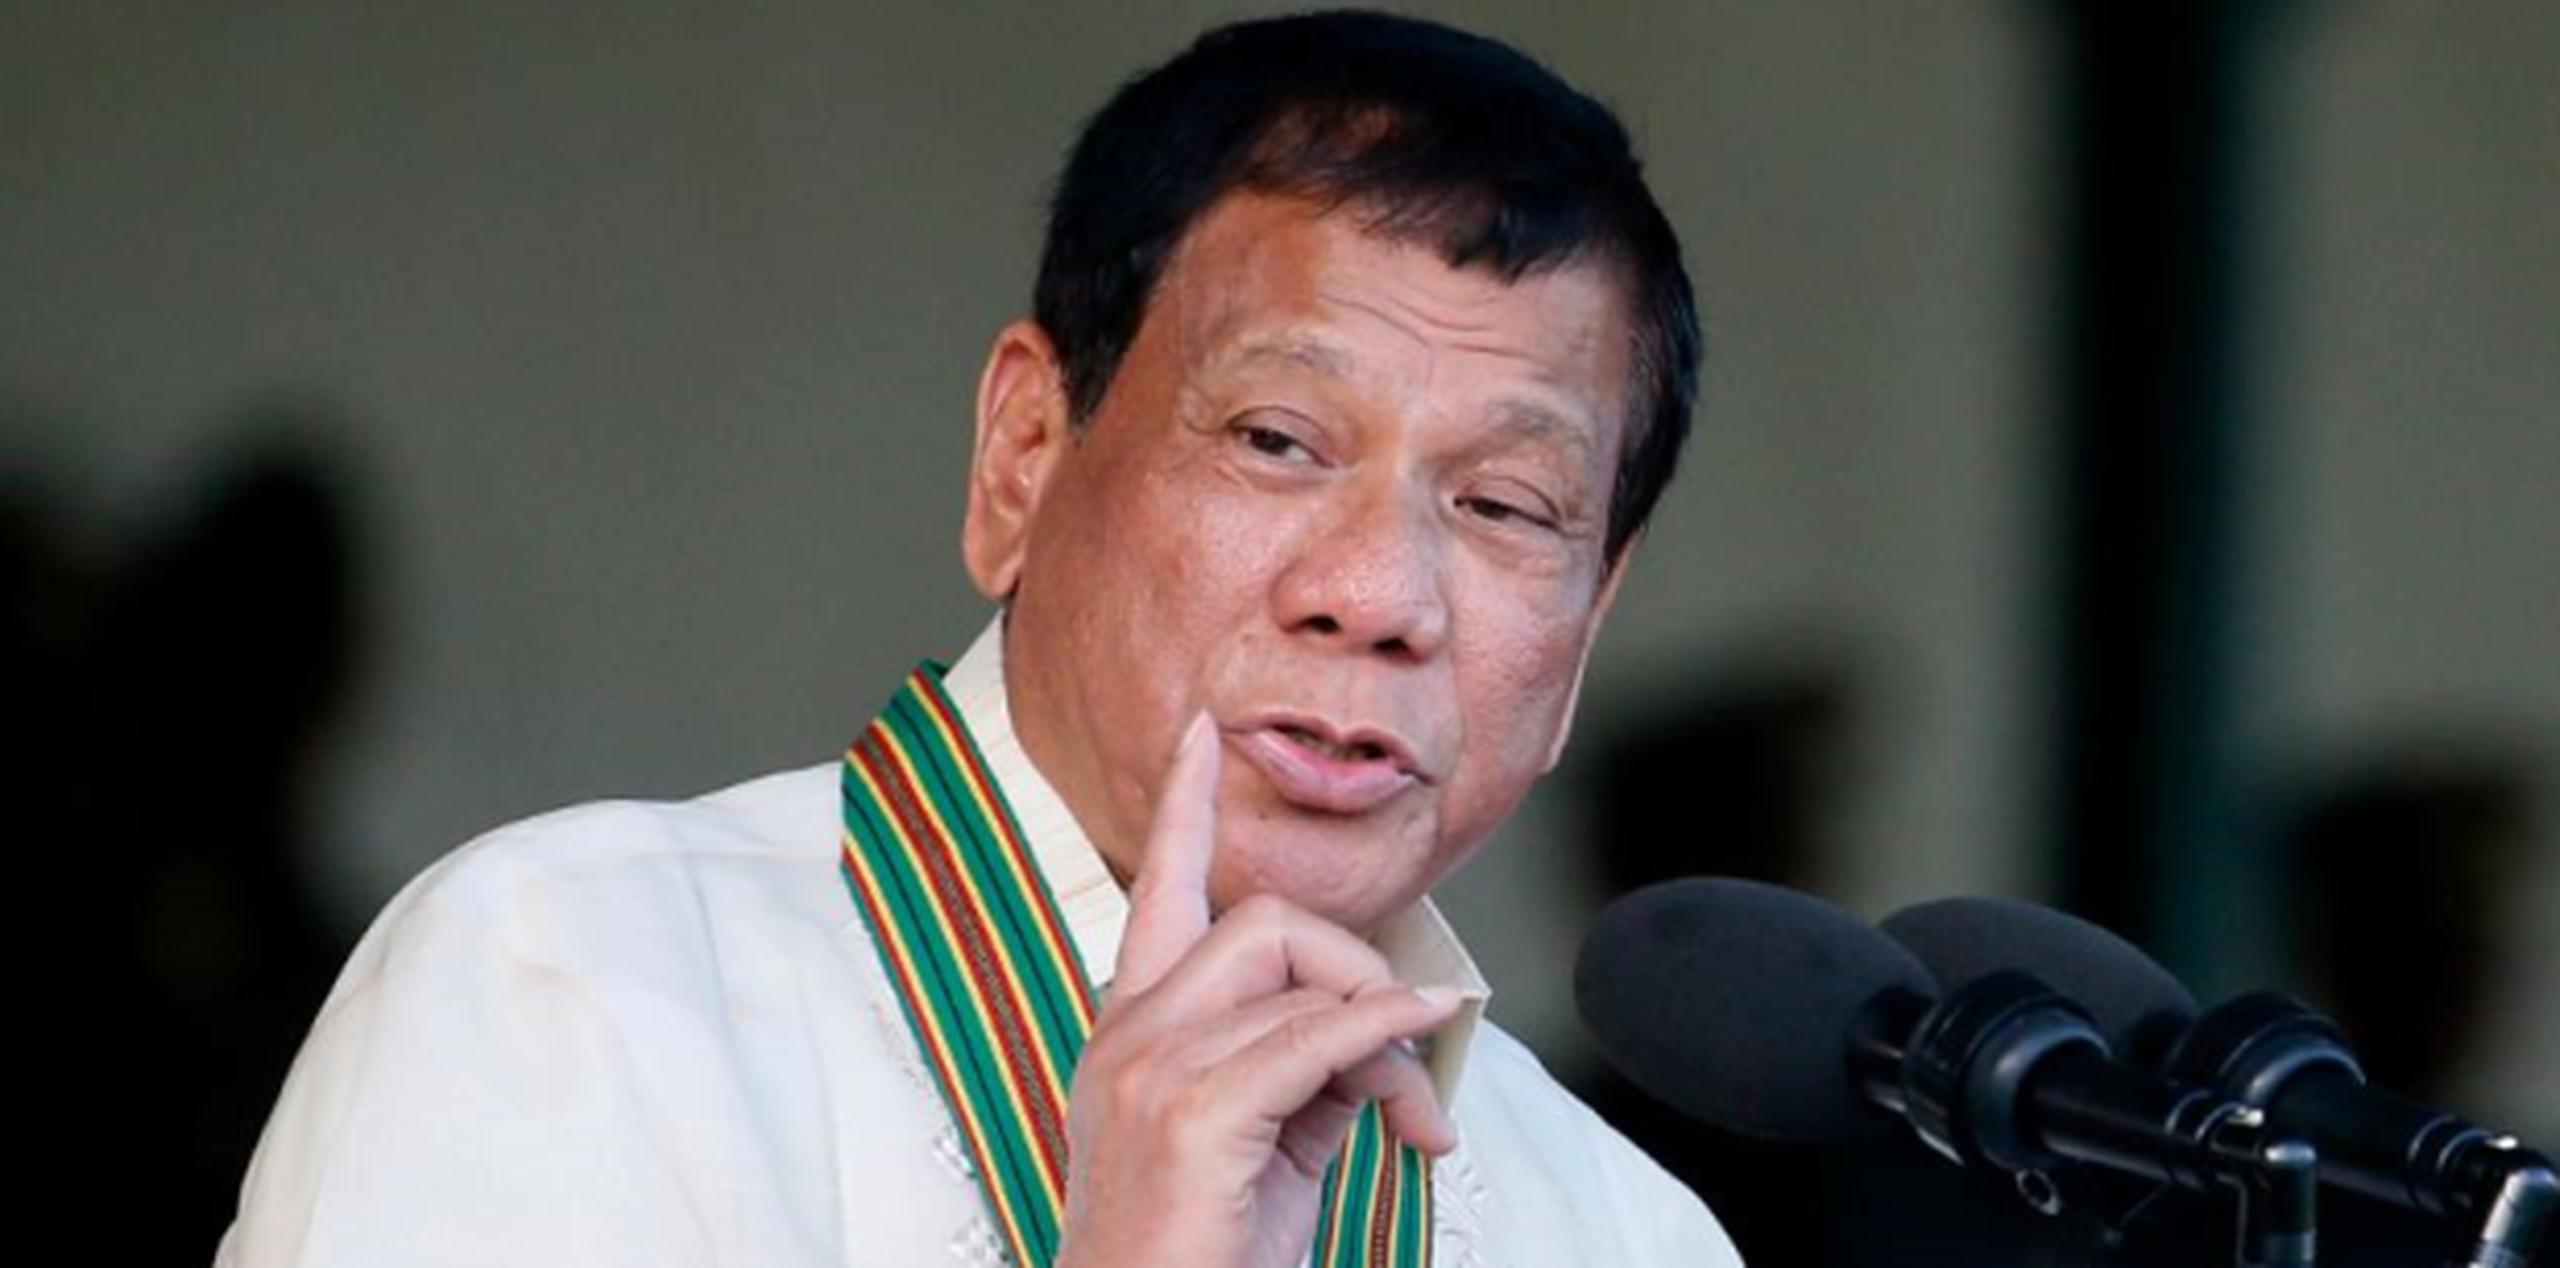 Duterte ordenó a sus fuerzas armadas a ir a la caza de los milicianos islamistas que intentaron atacar la provincia de Bohol, a los que calificó de "animales". (AP)